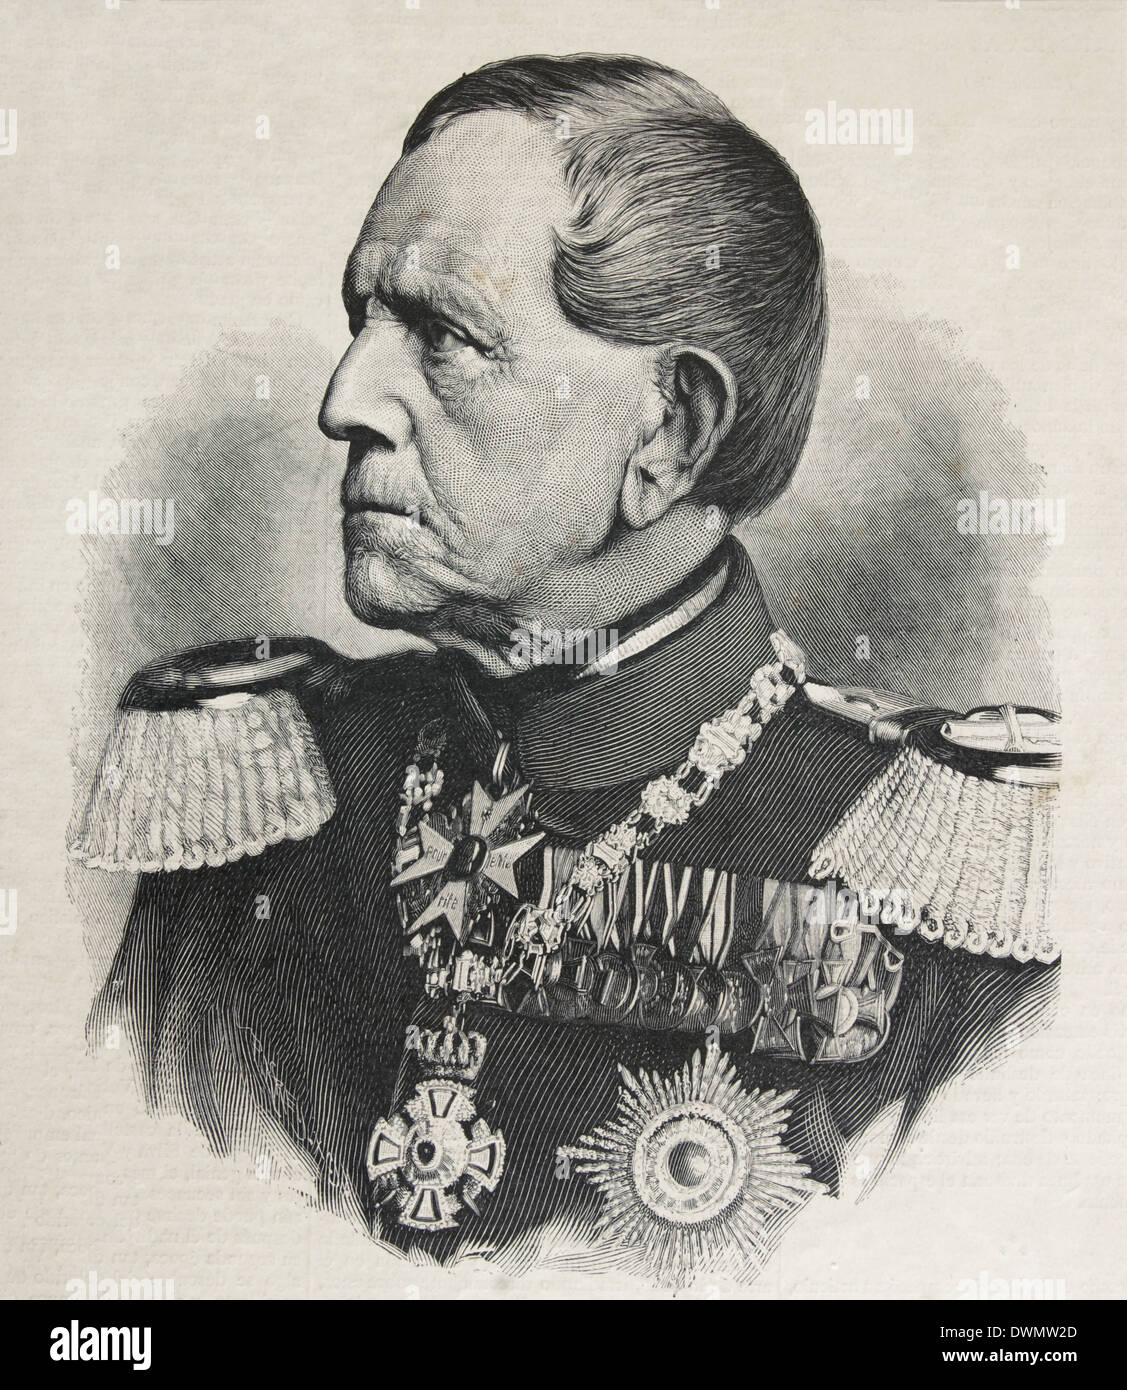 Helmunth von Moltke l'ancien (1800-1891). Le maréchal allemand. Gravure par Paul Lingua. L'illustration artistique, 1890. Banque D'Images